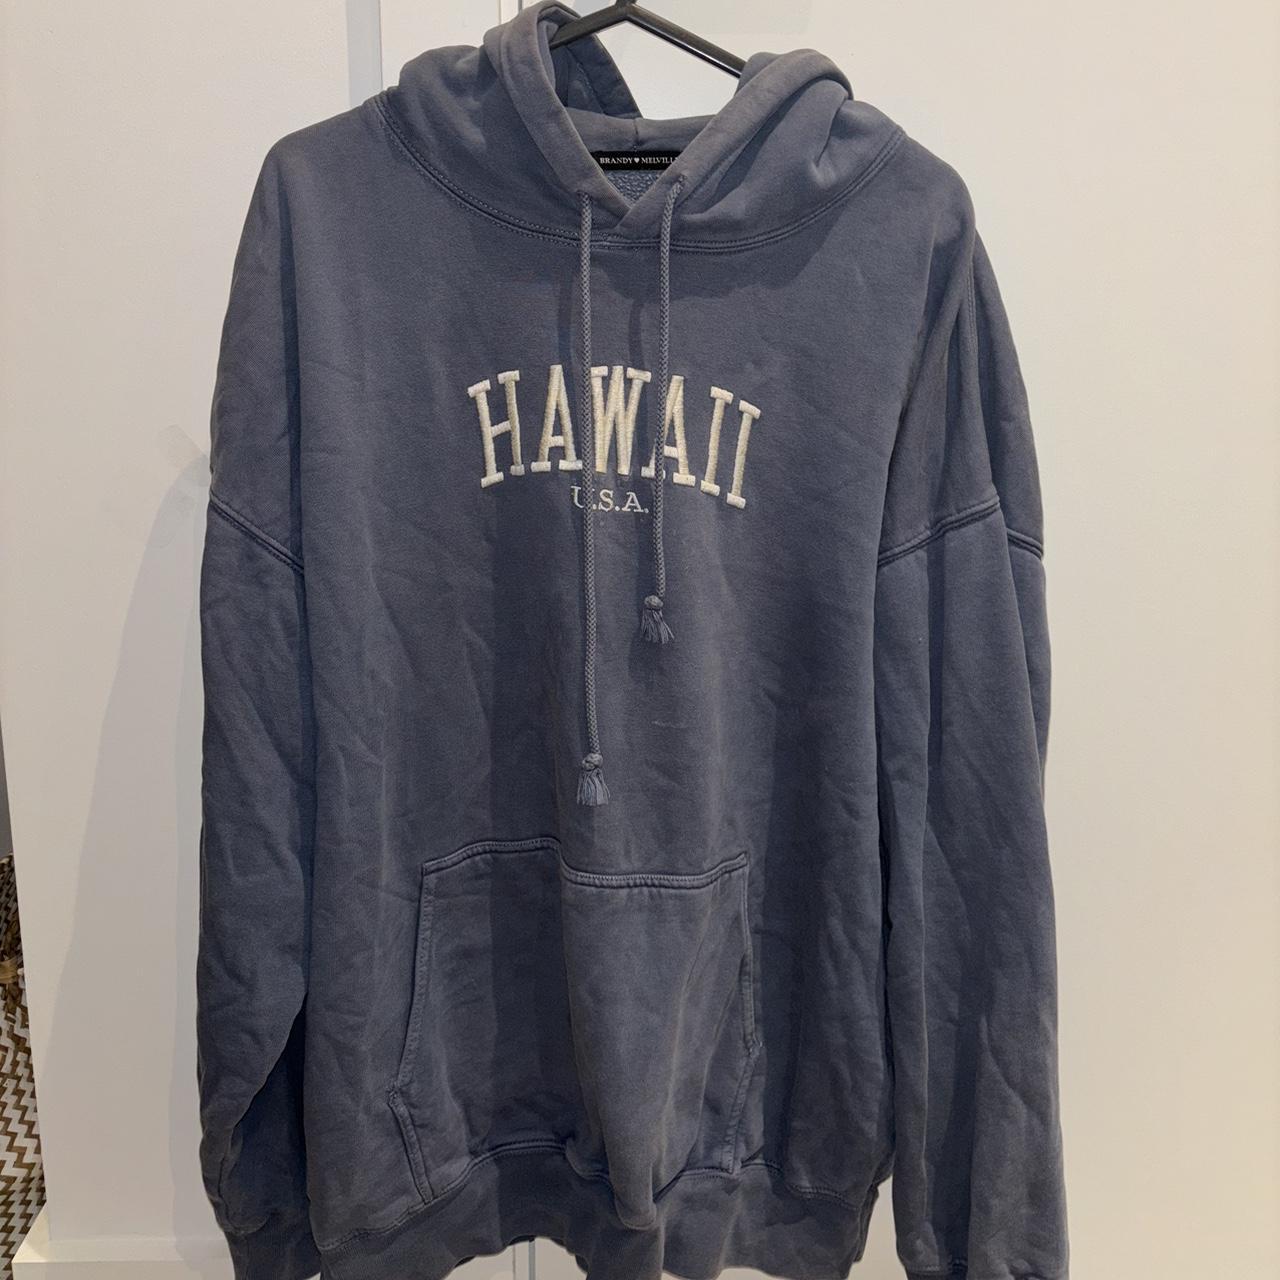 Blue Hawaii hoody from Brandy Melville Very... - Depop